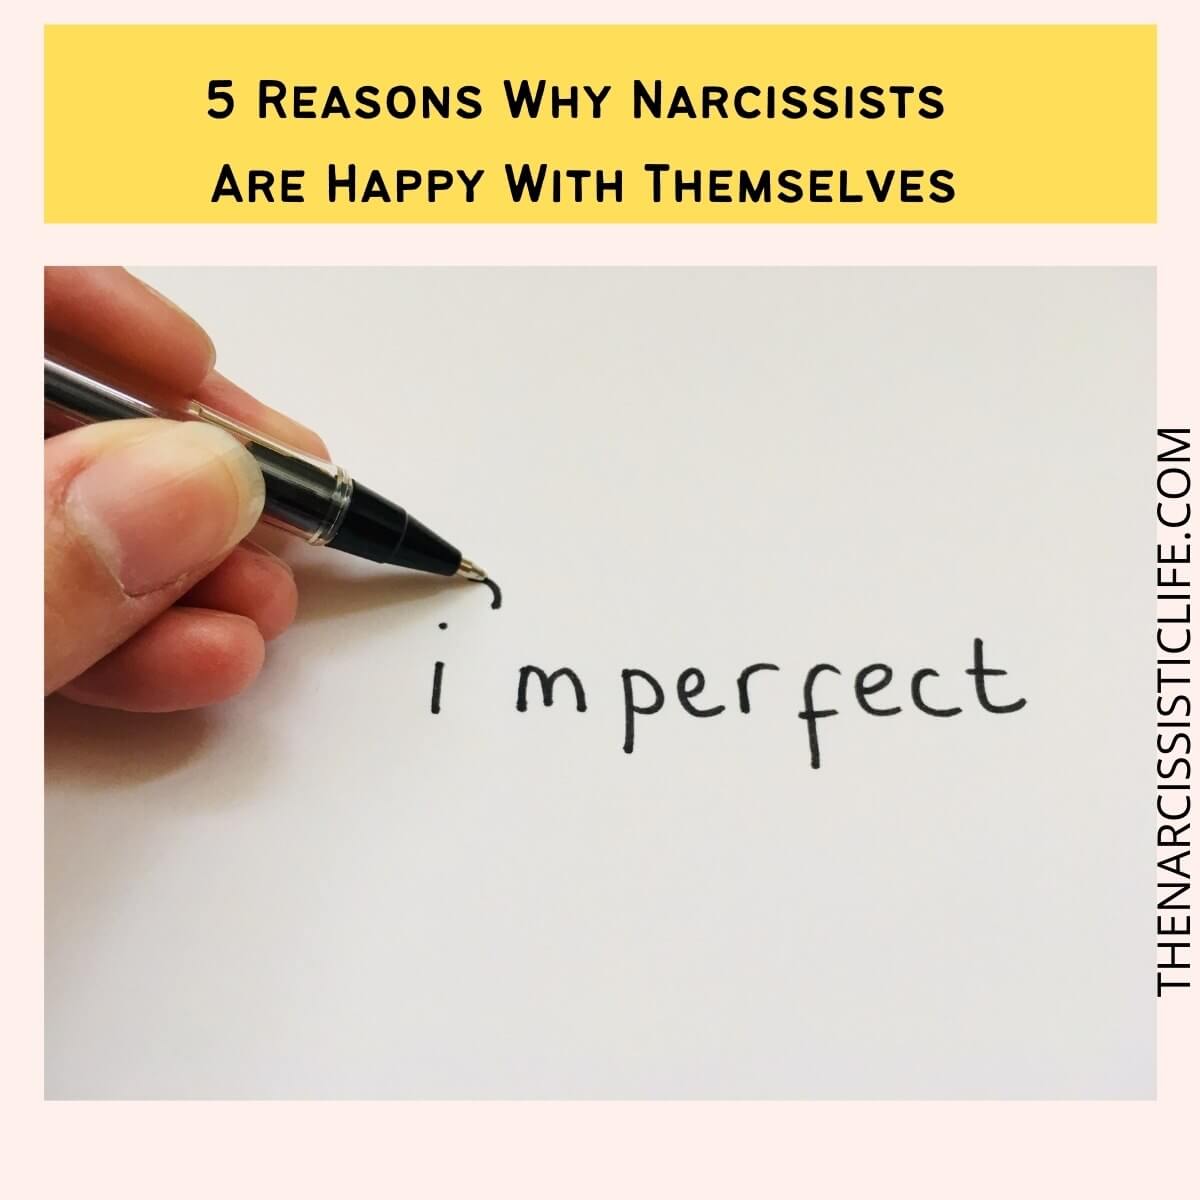 Нарциссистууд үнэхээр аз жаргалтай байж чадах уу? (Нарсистист)